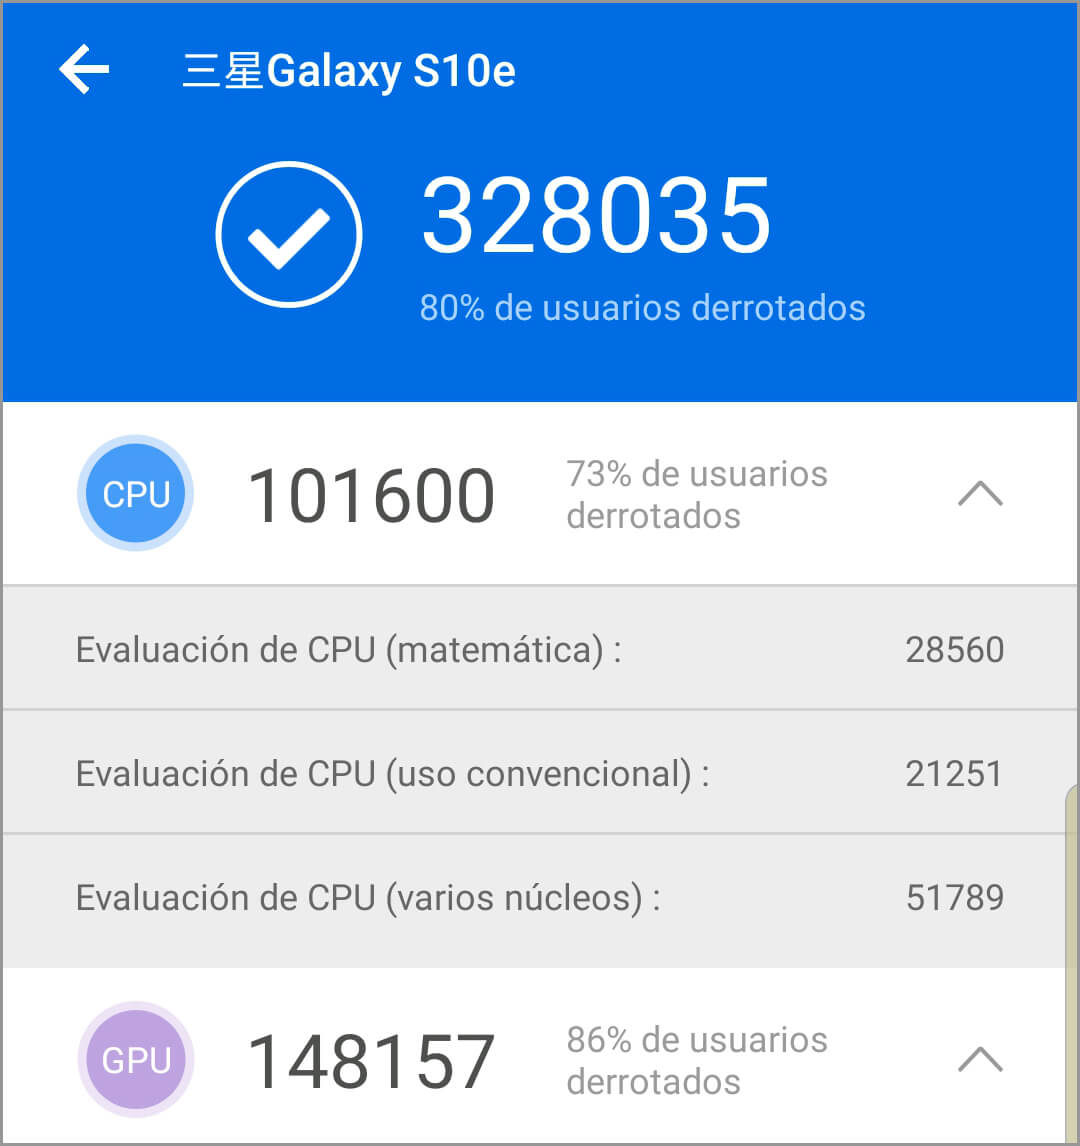 Обзор Samsung Galaxy S10e, обзор с особенностями и мнениями 7